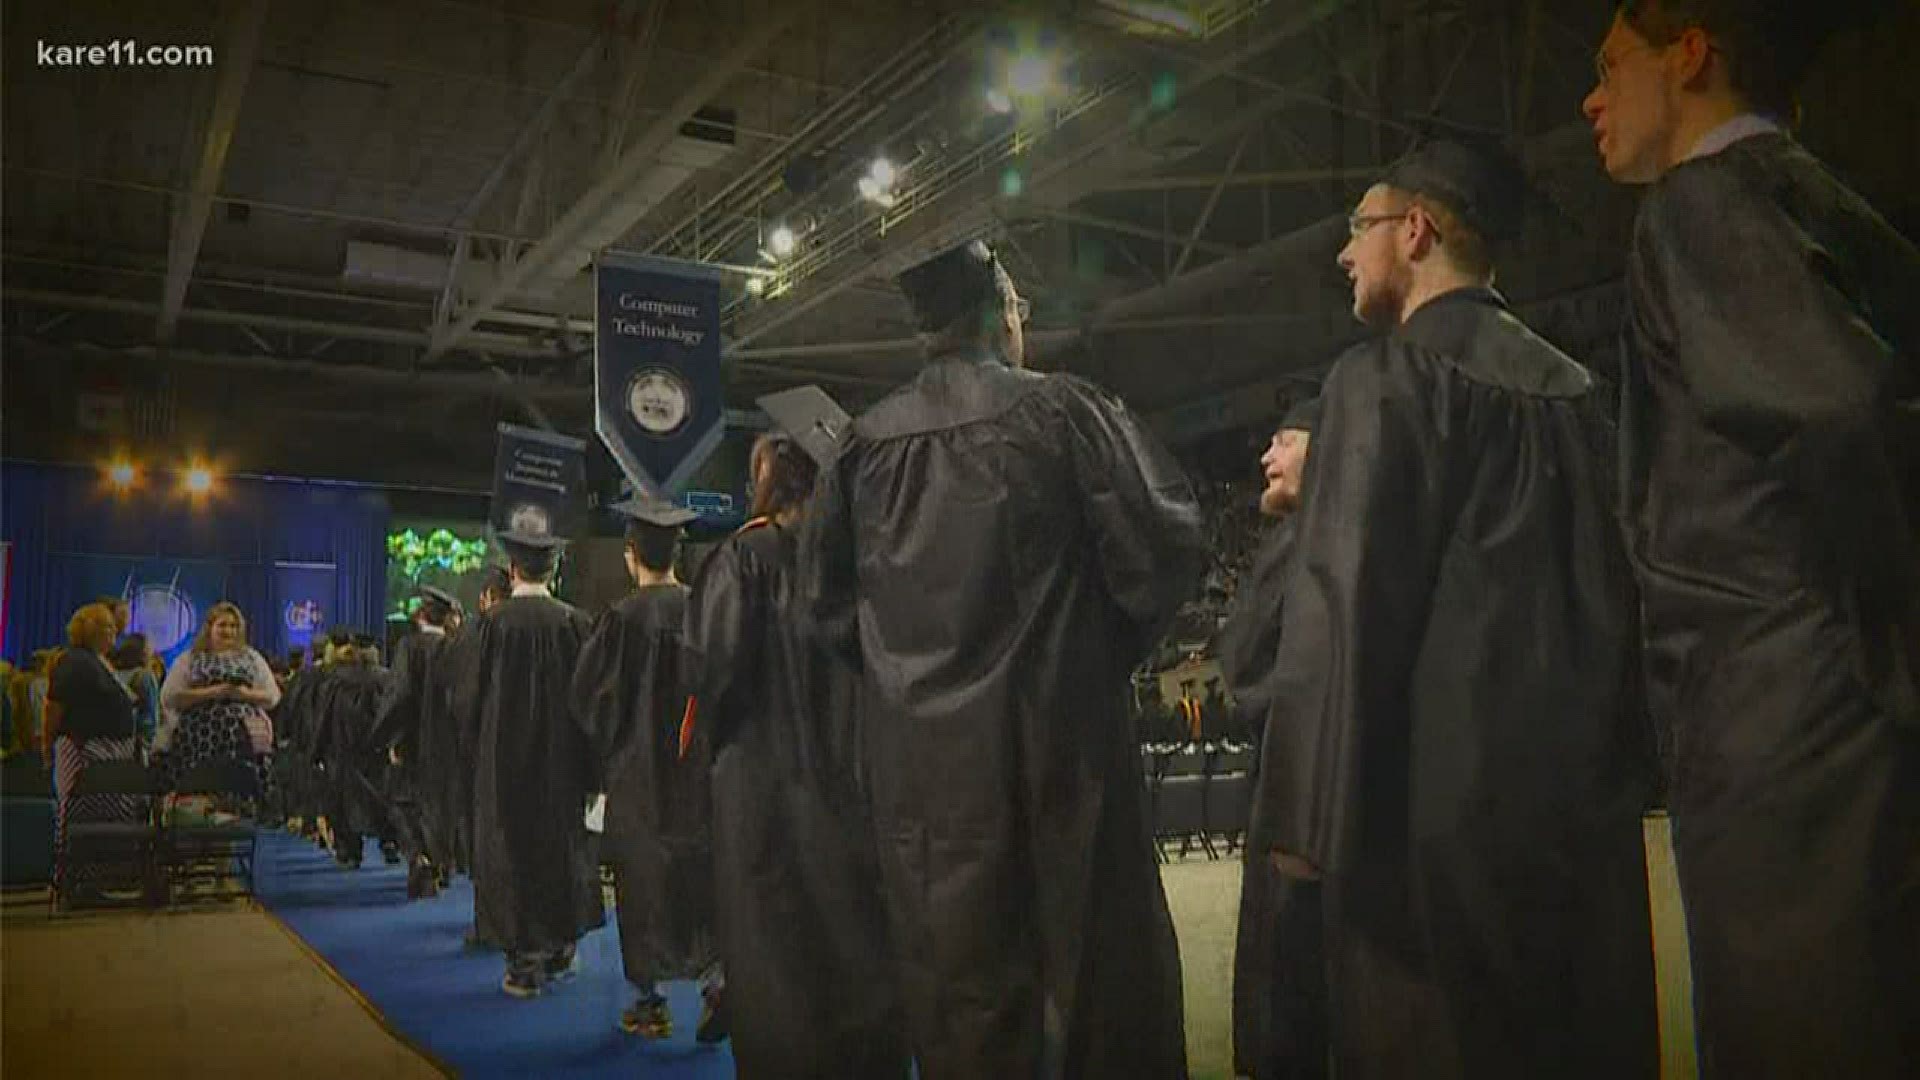 Graduating college seniors face volatile job market